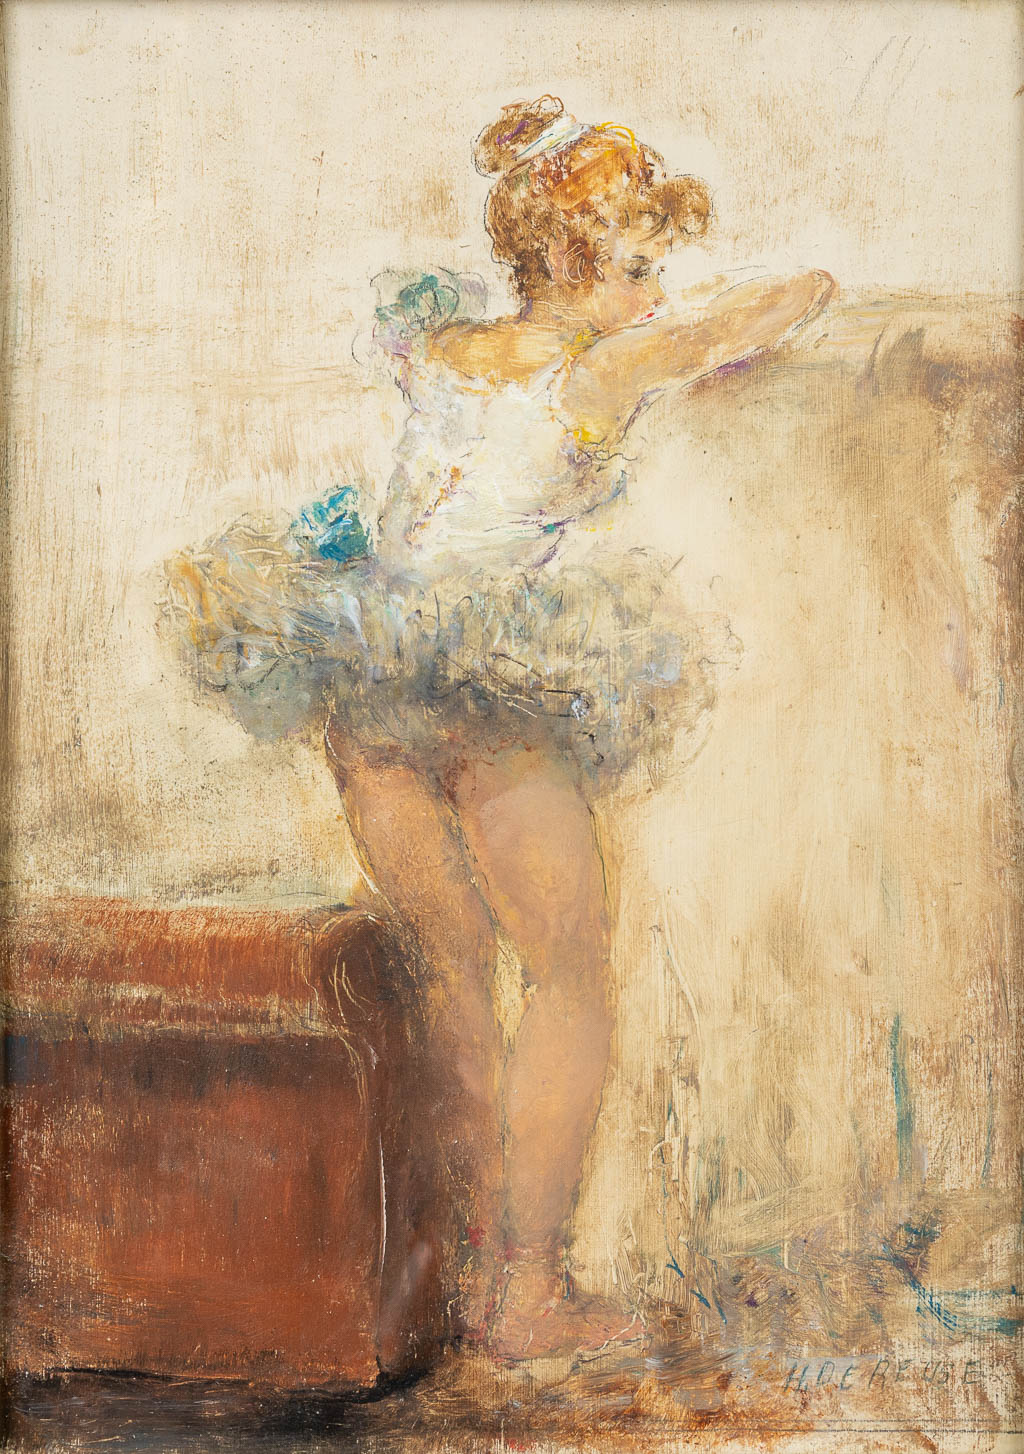 Hélène DE REUSE (1892-1979) 'Ballerina' a painting, oil on canvas. (25 x 33 cm)